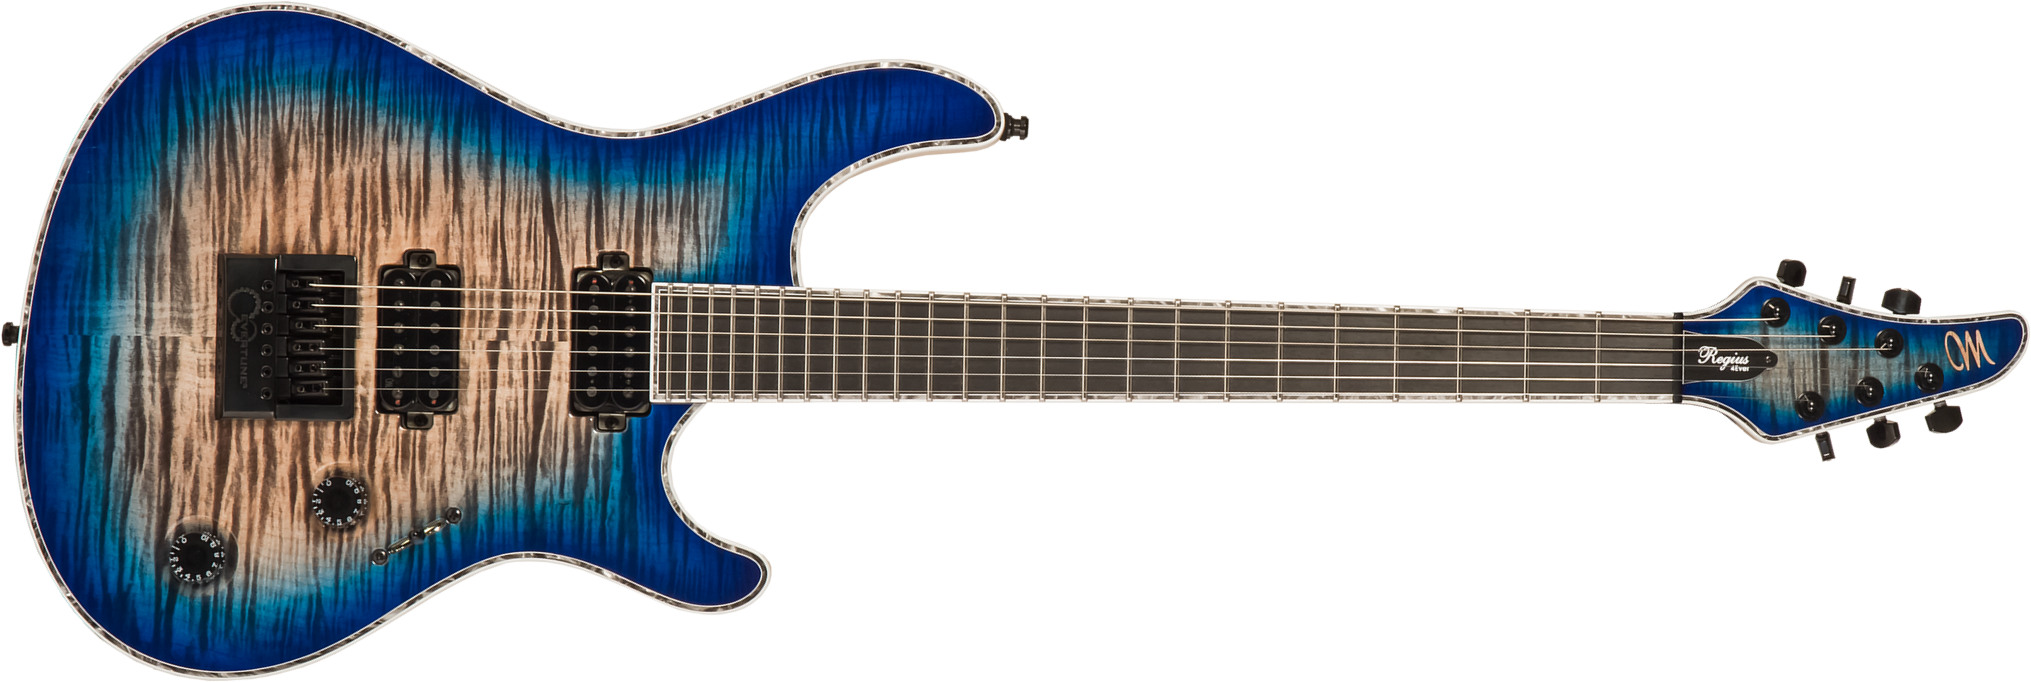 Mayones Guitars Regius 4ever 6 2h Ht Eb #rp2309275 - Jeans Black 3-tone Blue Burst Gloss - Guitare Électrique MÉtal - Main picture